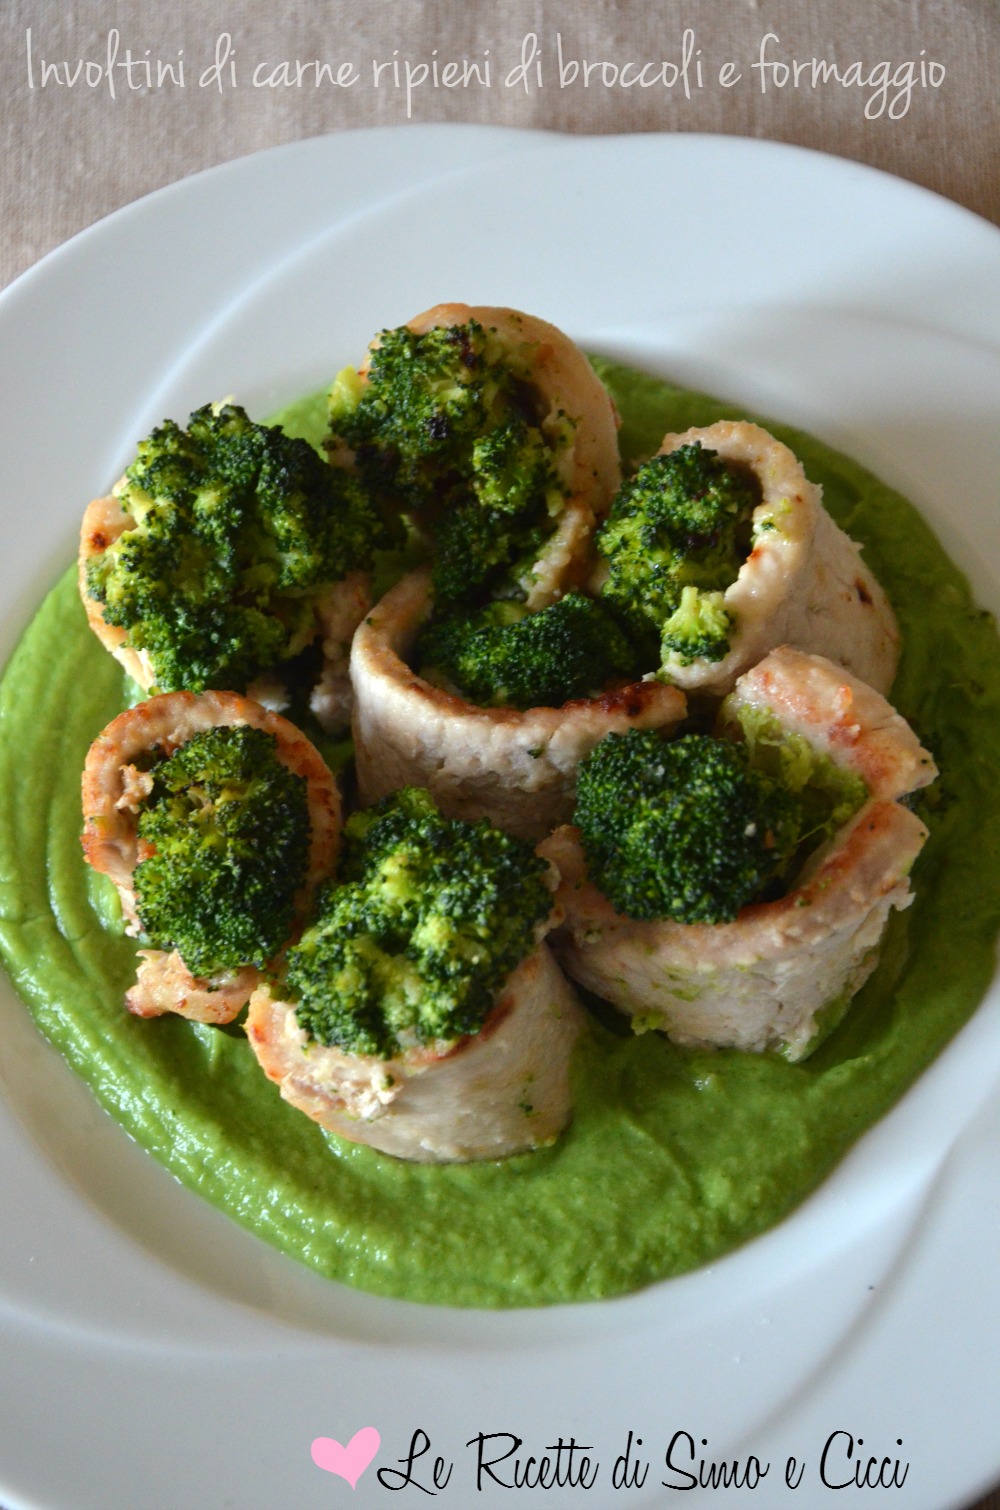 Involtini di carne ripieni di broccoli e formaggio su crema di broccoli